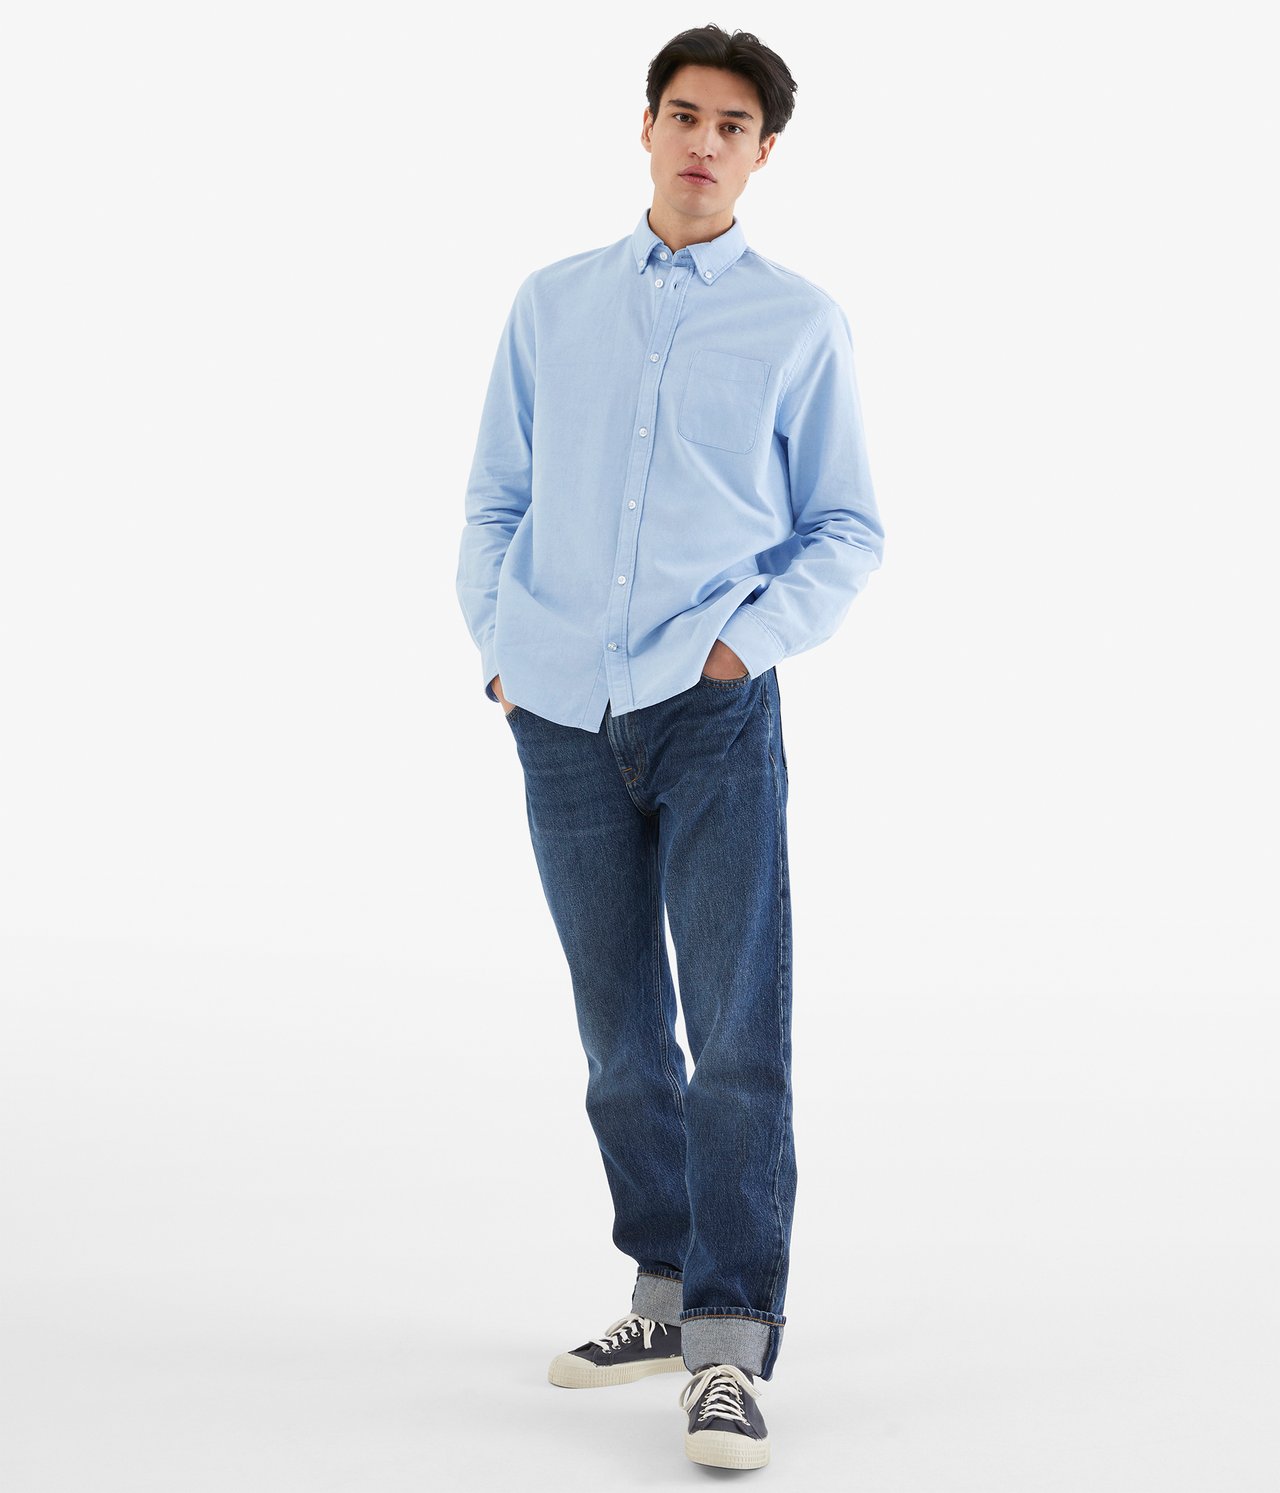 Oxfordskjorta regular fit - Ljusblå - 189cm / Storlek: M - 2